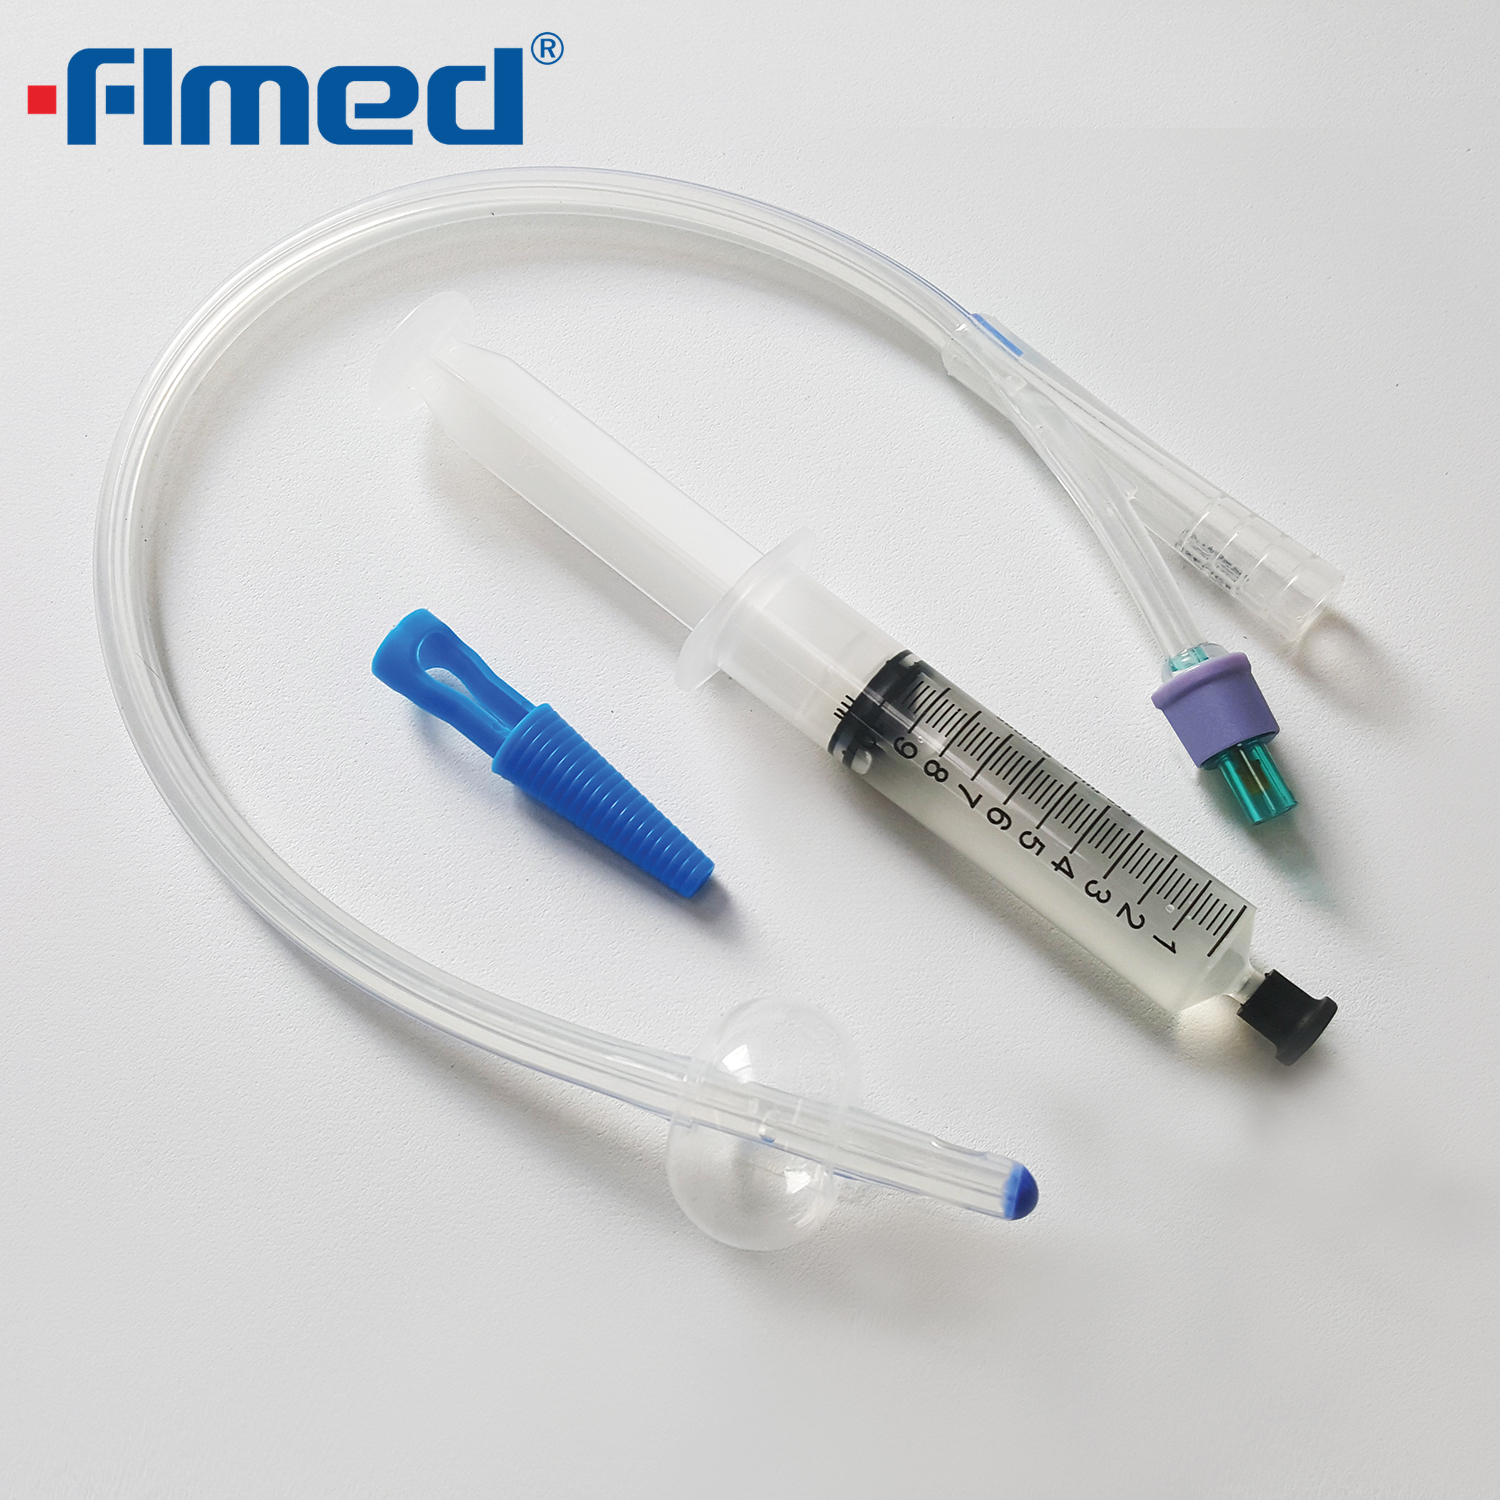 3-weg Standart Silicone Foley Catheter